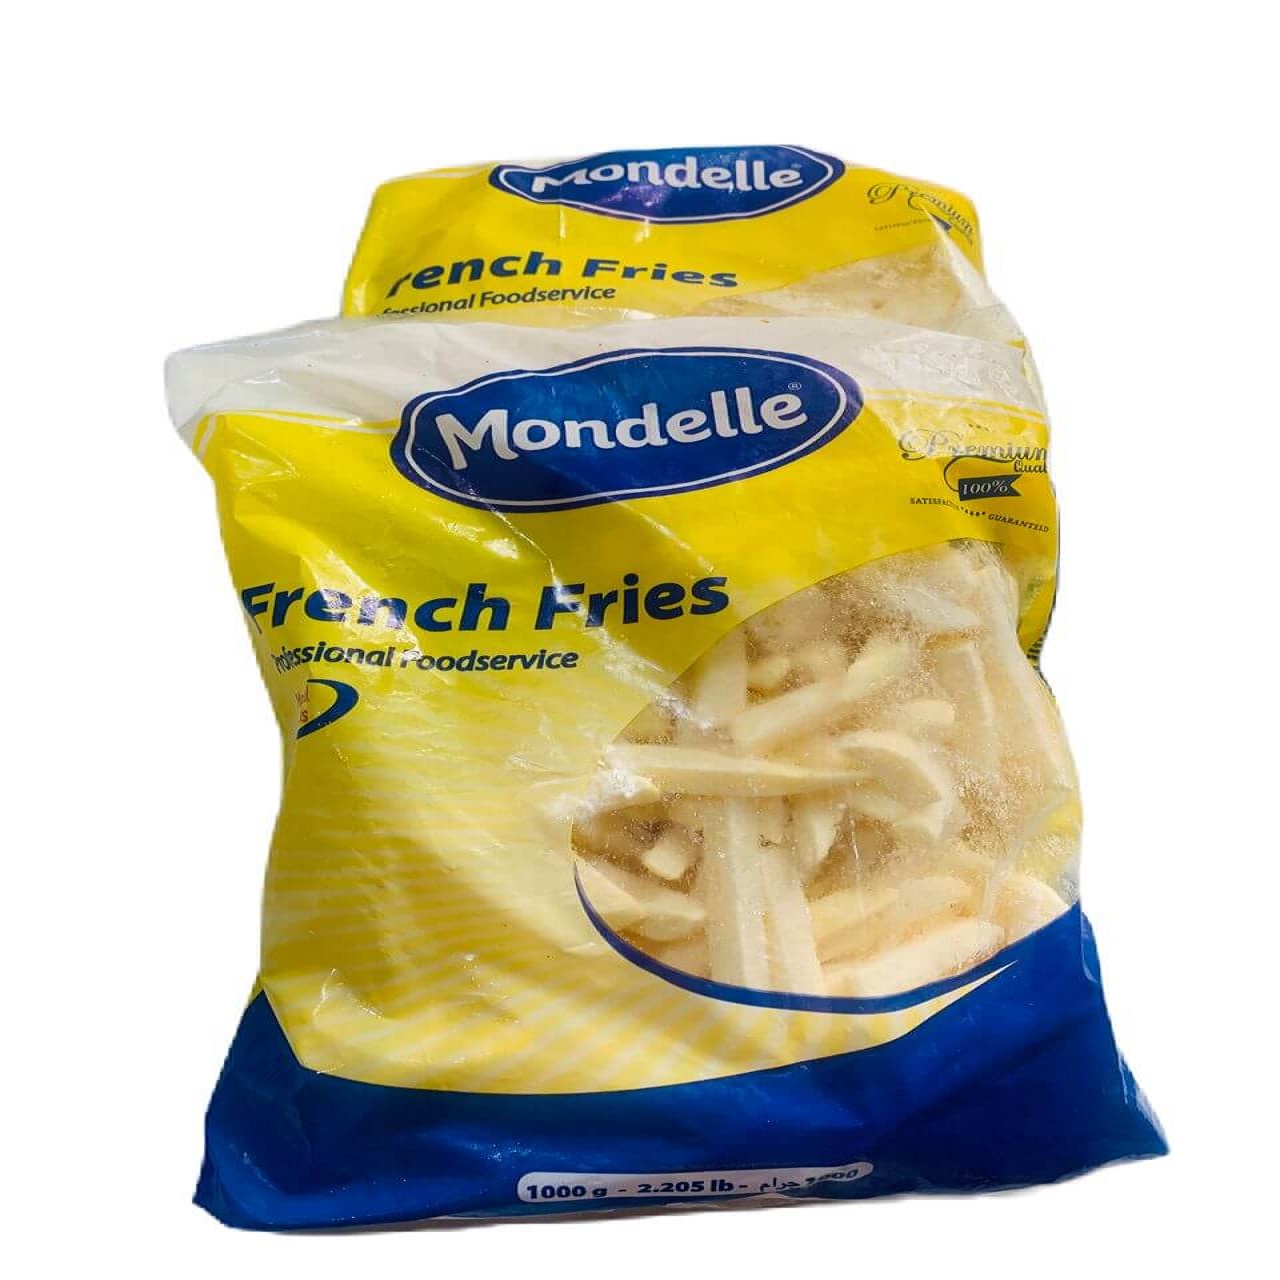 packs of Frozen French Fries (Mondelle)